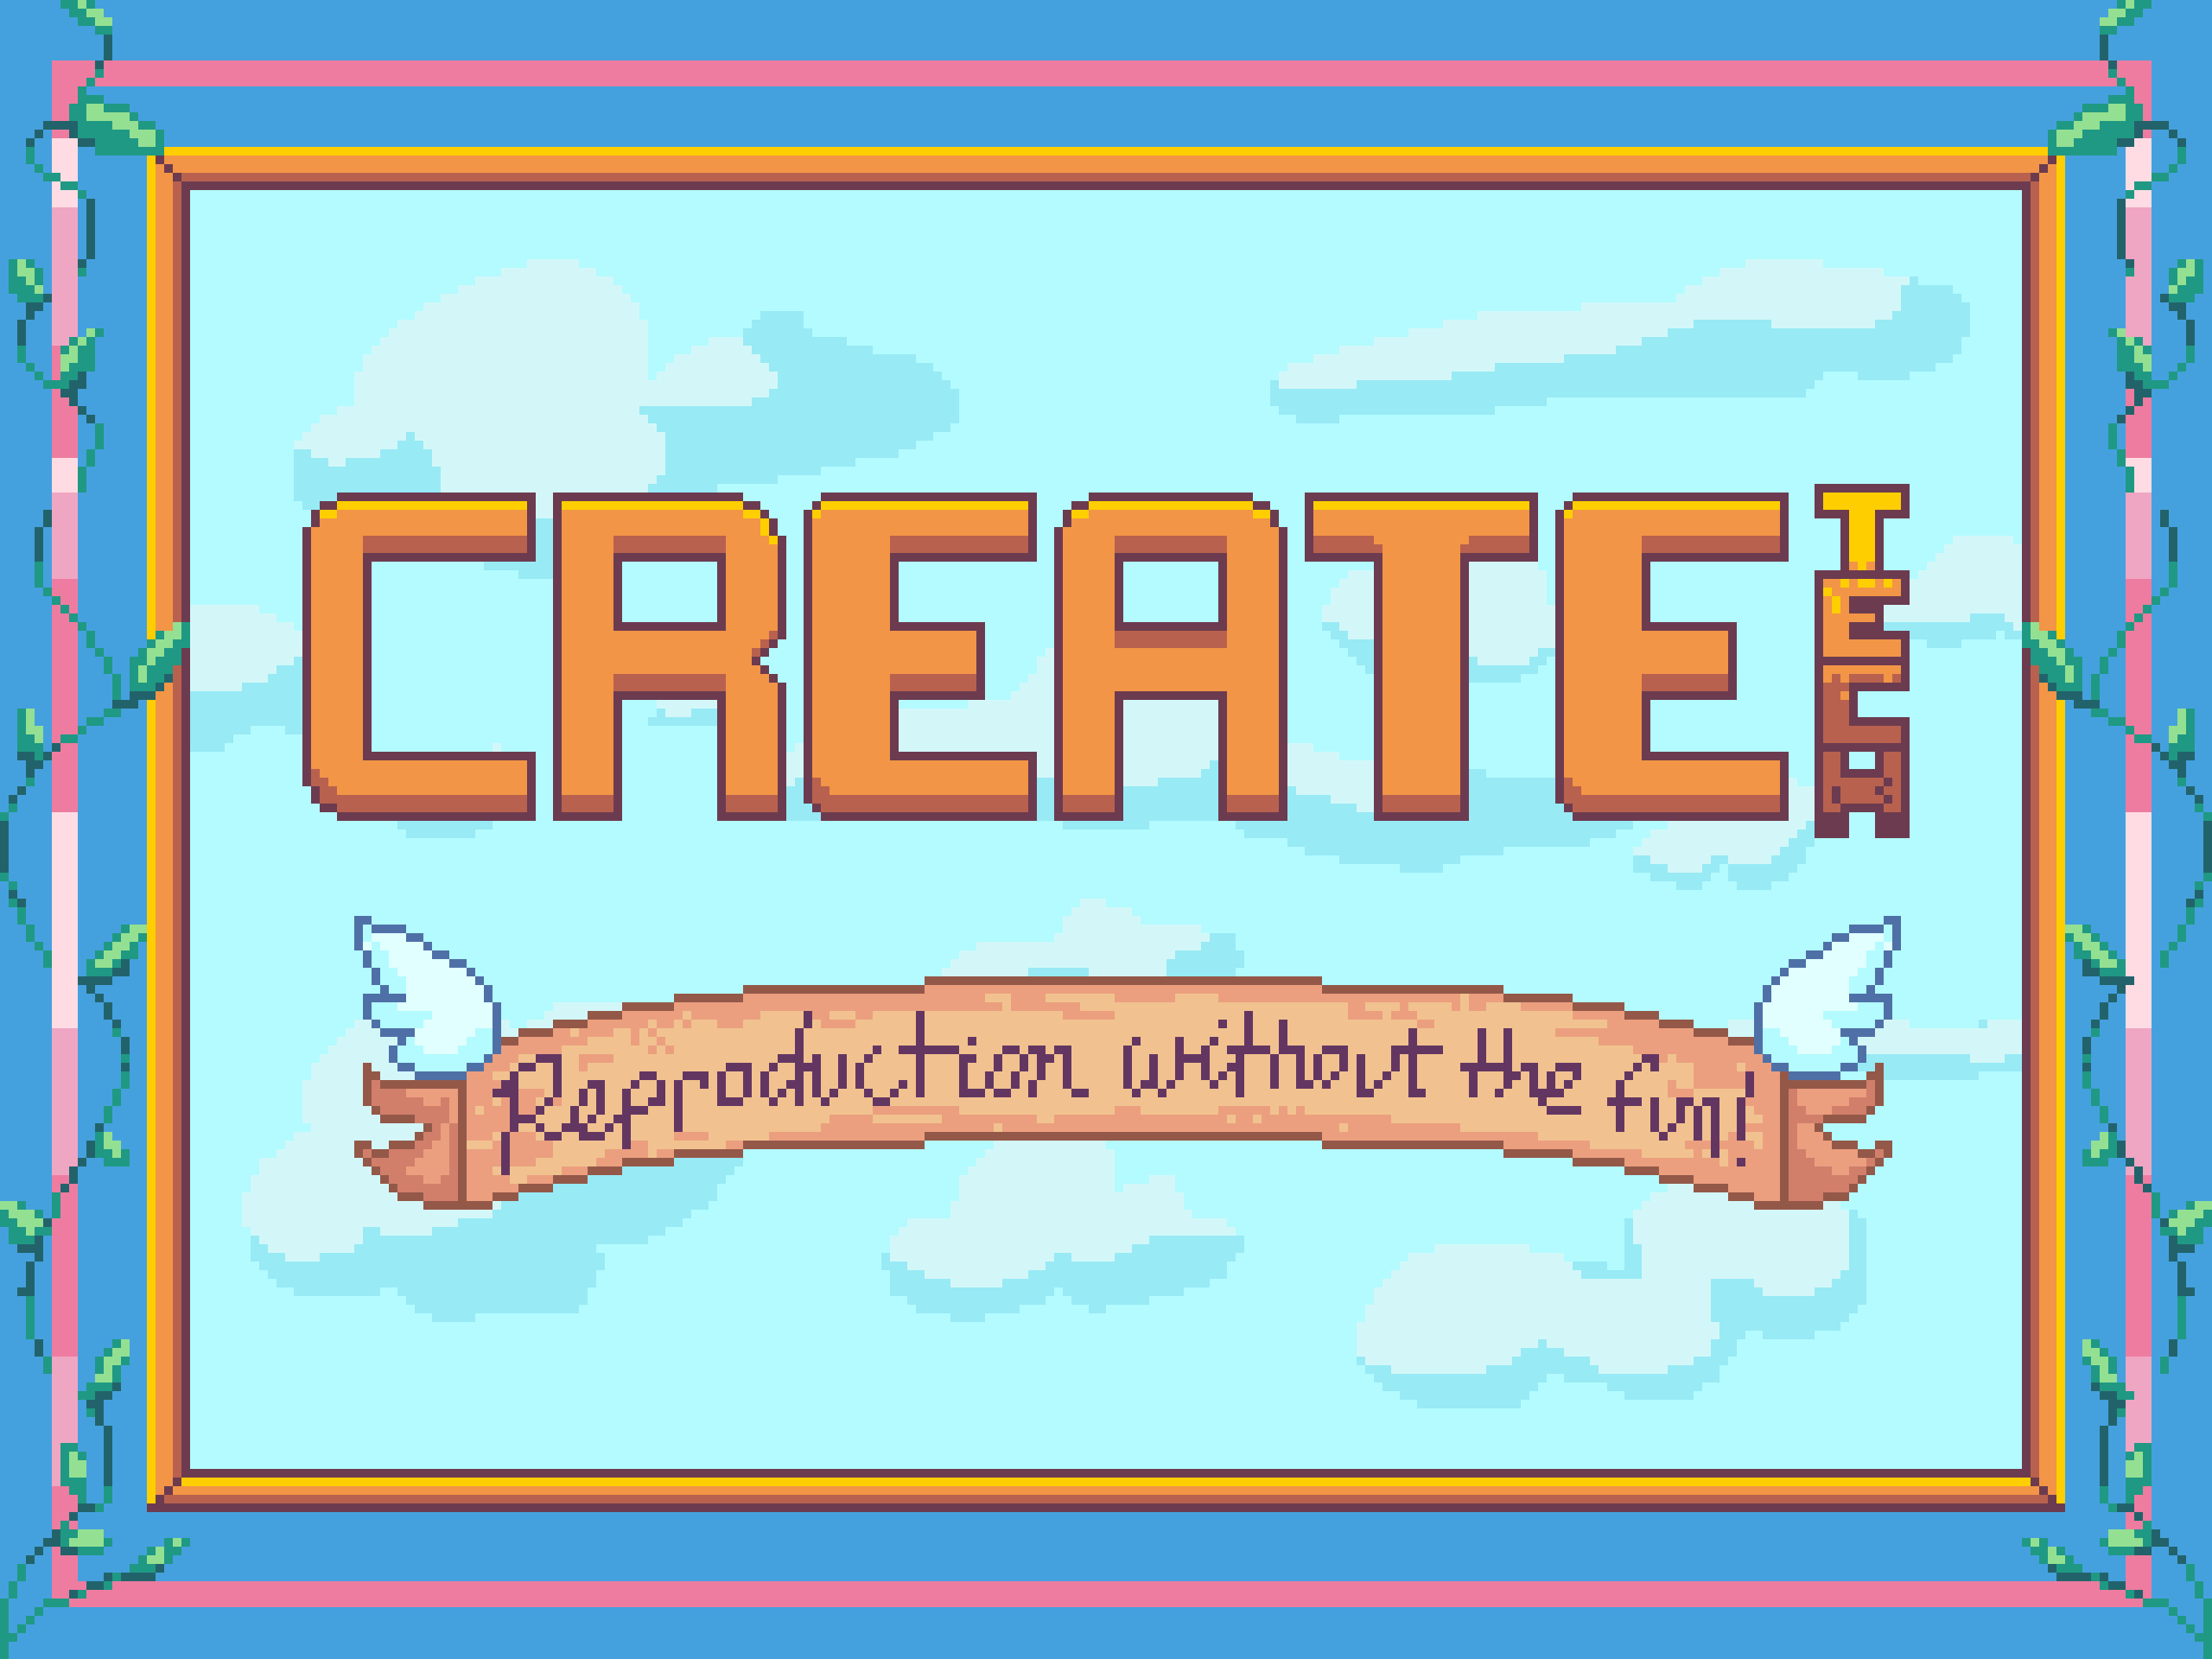 CreateTech